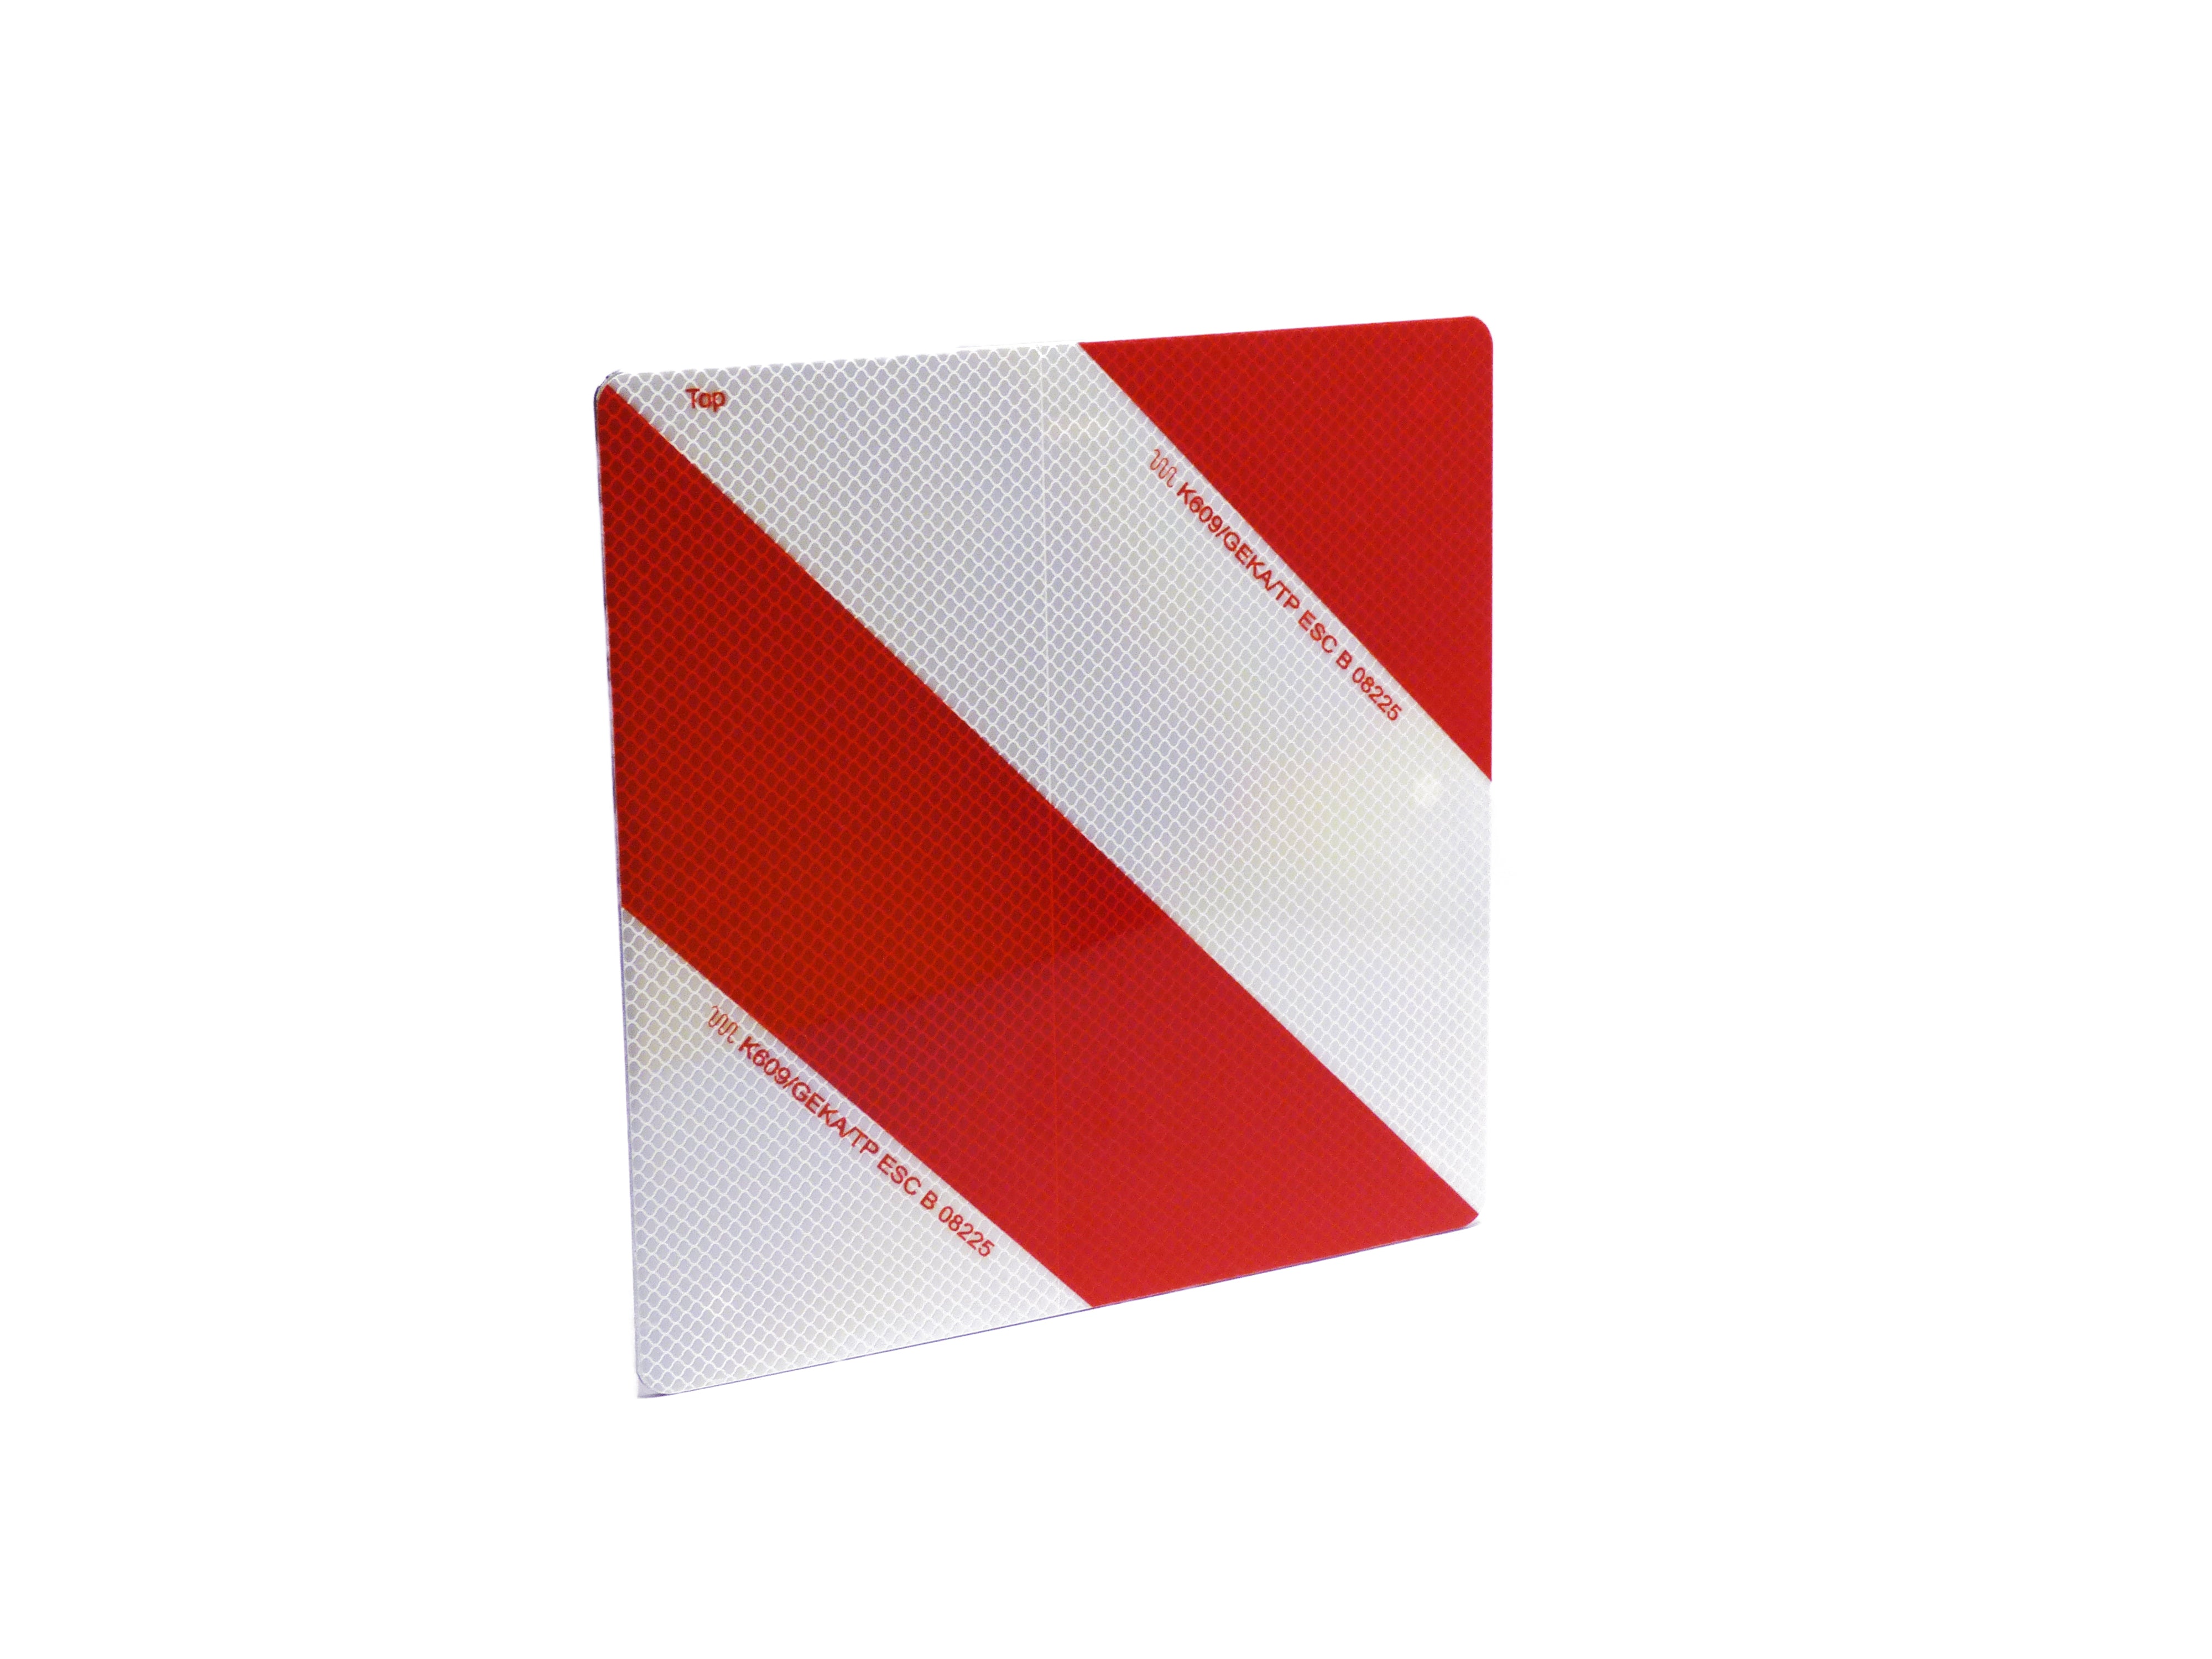 Warntafel rechtsweisend, für Land- und Forstwirtschaft, rot/weiß, 42,3 x  28,2 cm